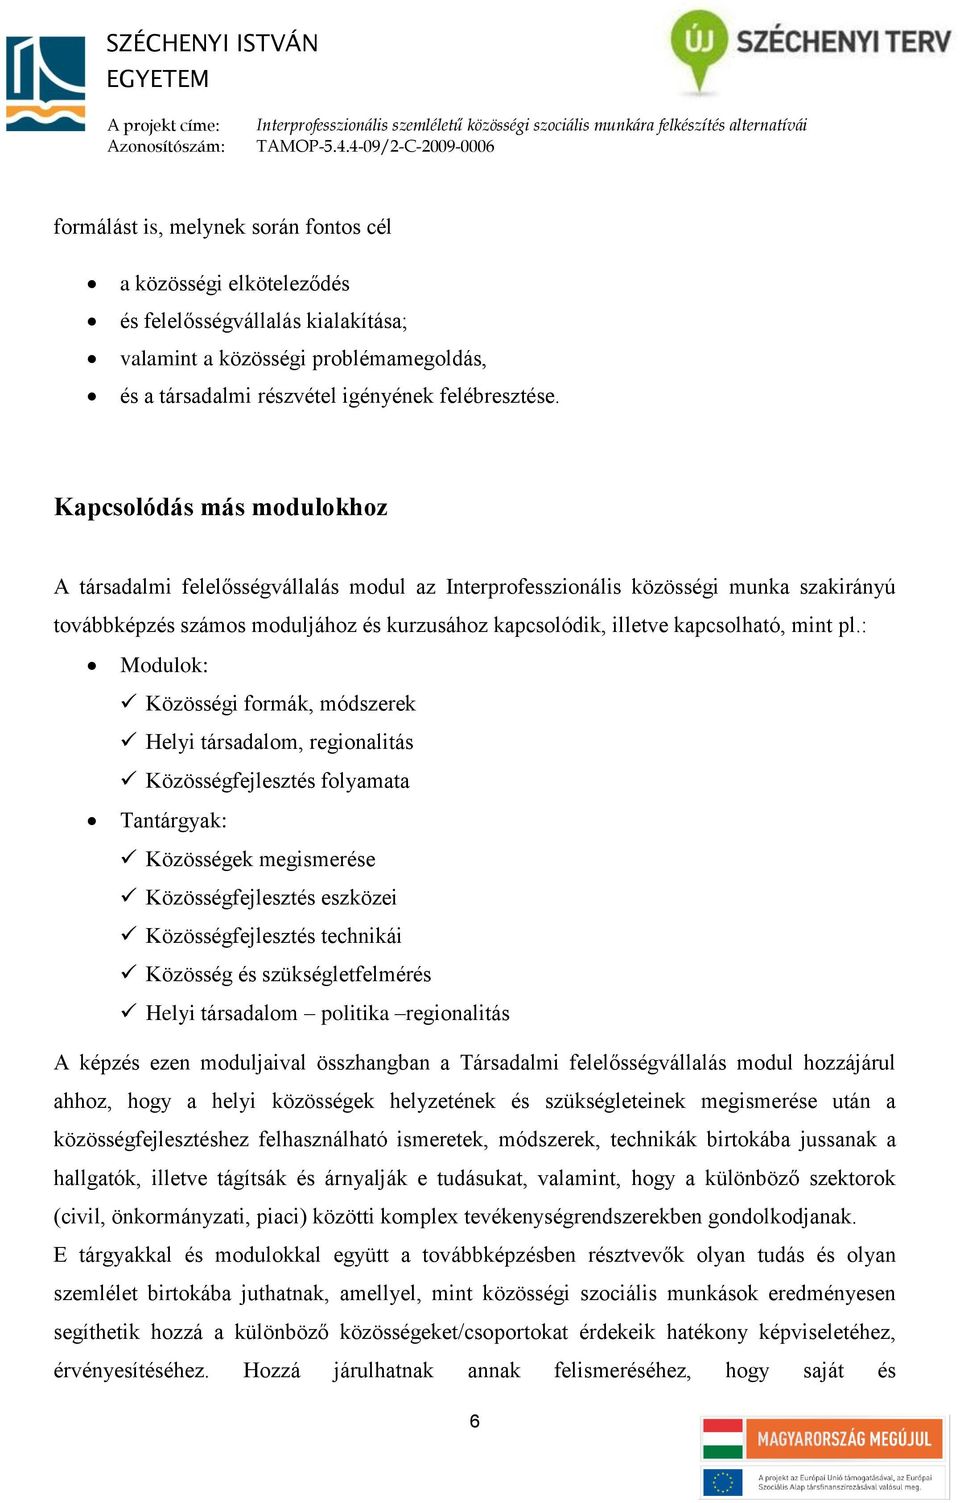 pl.: Modulok: Közösségi formák, módszerek Helyi társadalom, regionalitás Közösségfejlesztés folyamata Tantárgyak: Közösségek megismerése Közösségfejlesztés eszközei Közösségfejlesztés technikái